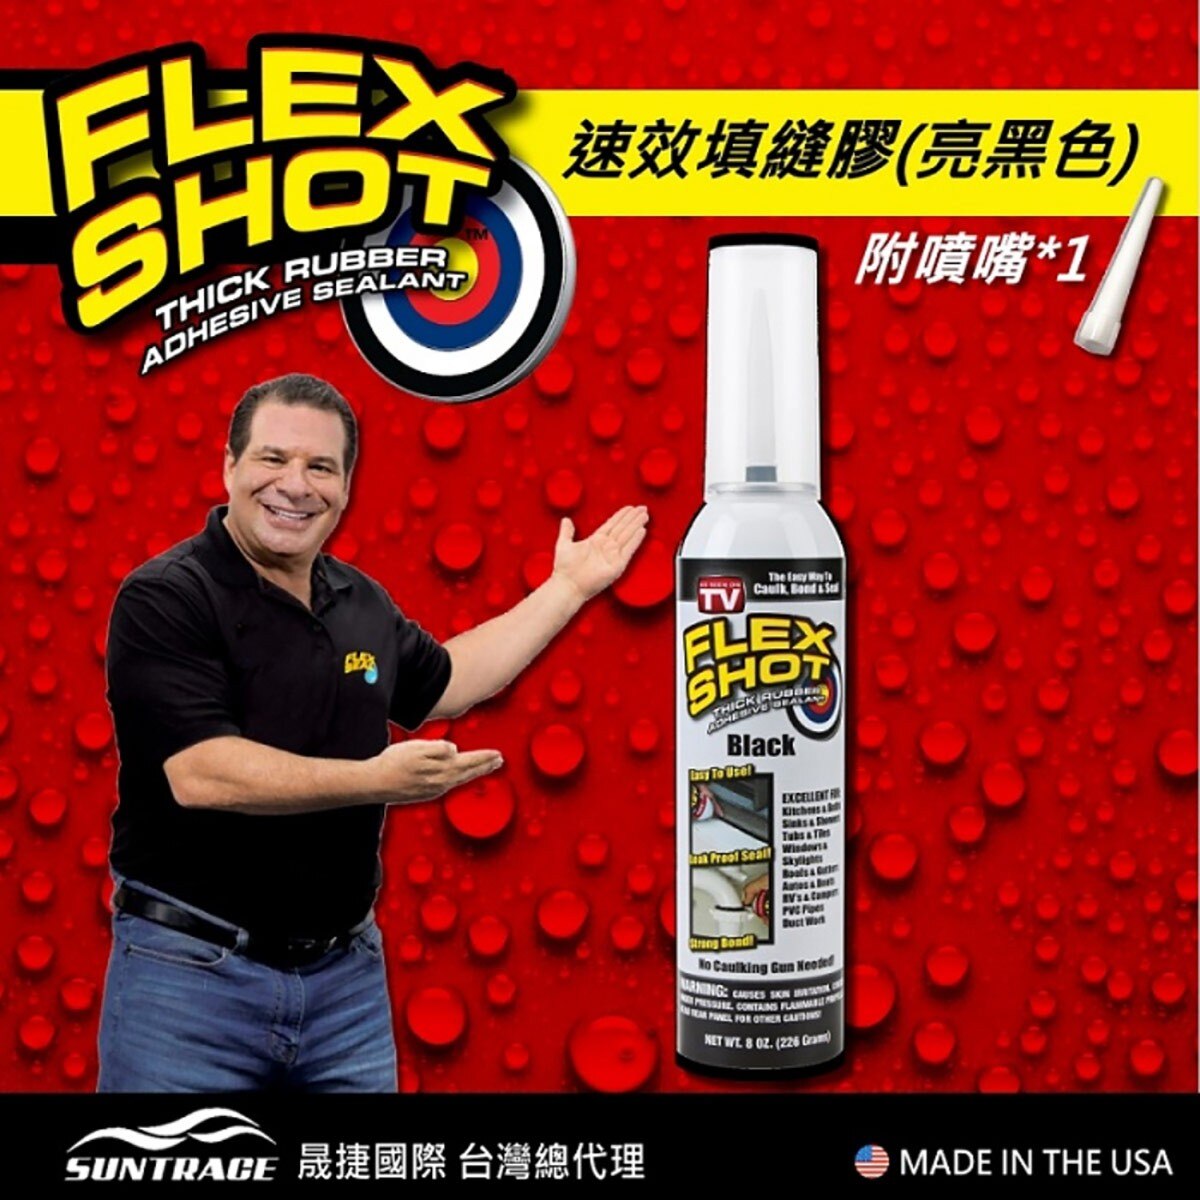 FLEX SHOT 速效填縫膠-黑色，固化乾燥後呈彈性橡膠，具伸展彈性。